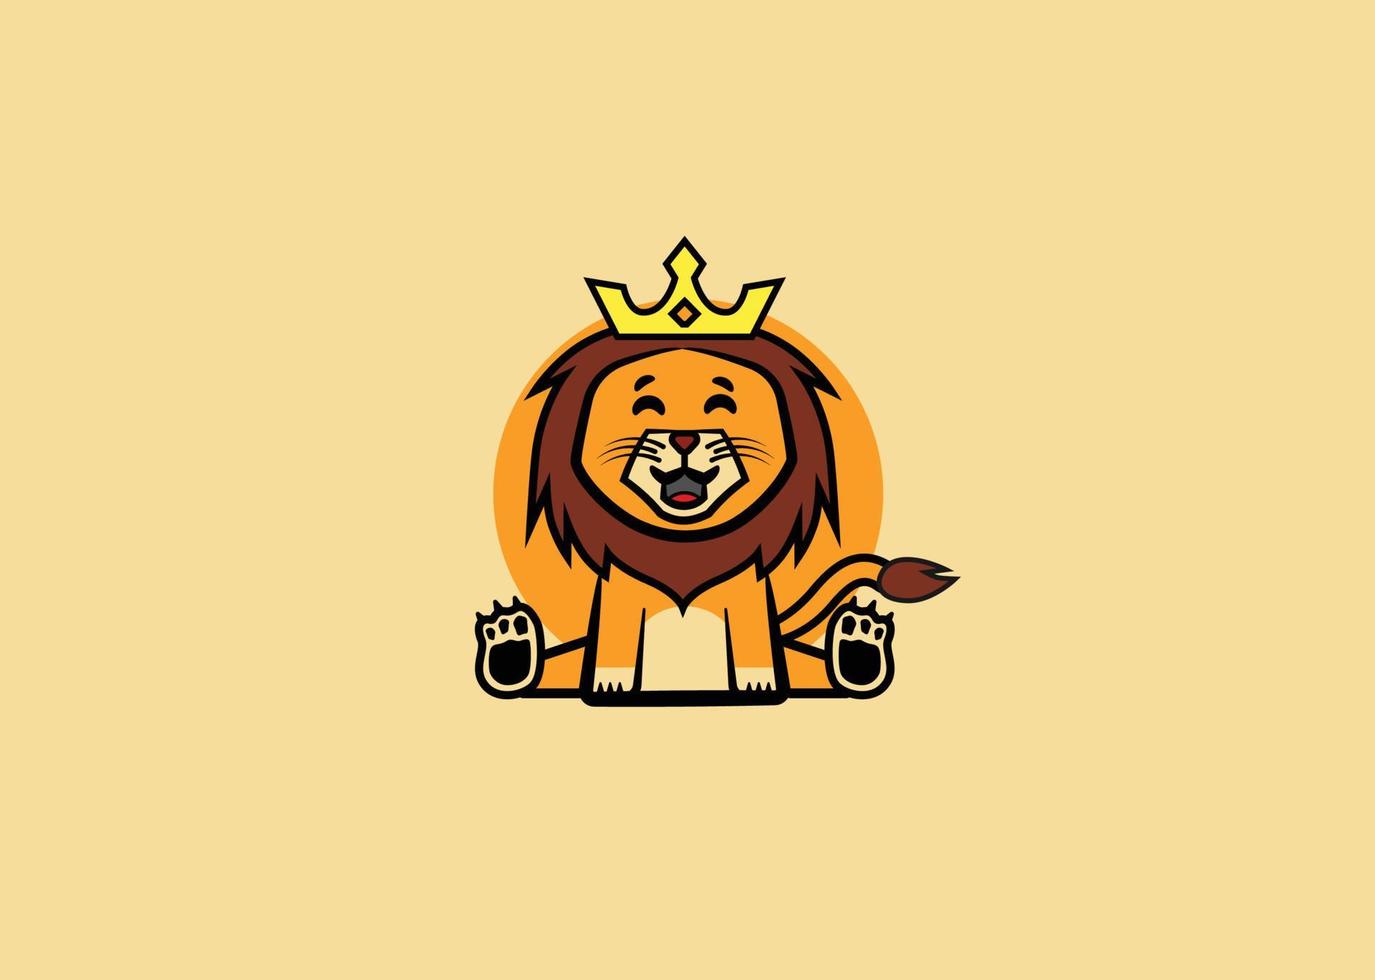 lindo vector de león, logo, diseño simple, naranja, amarillo.